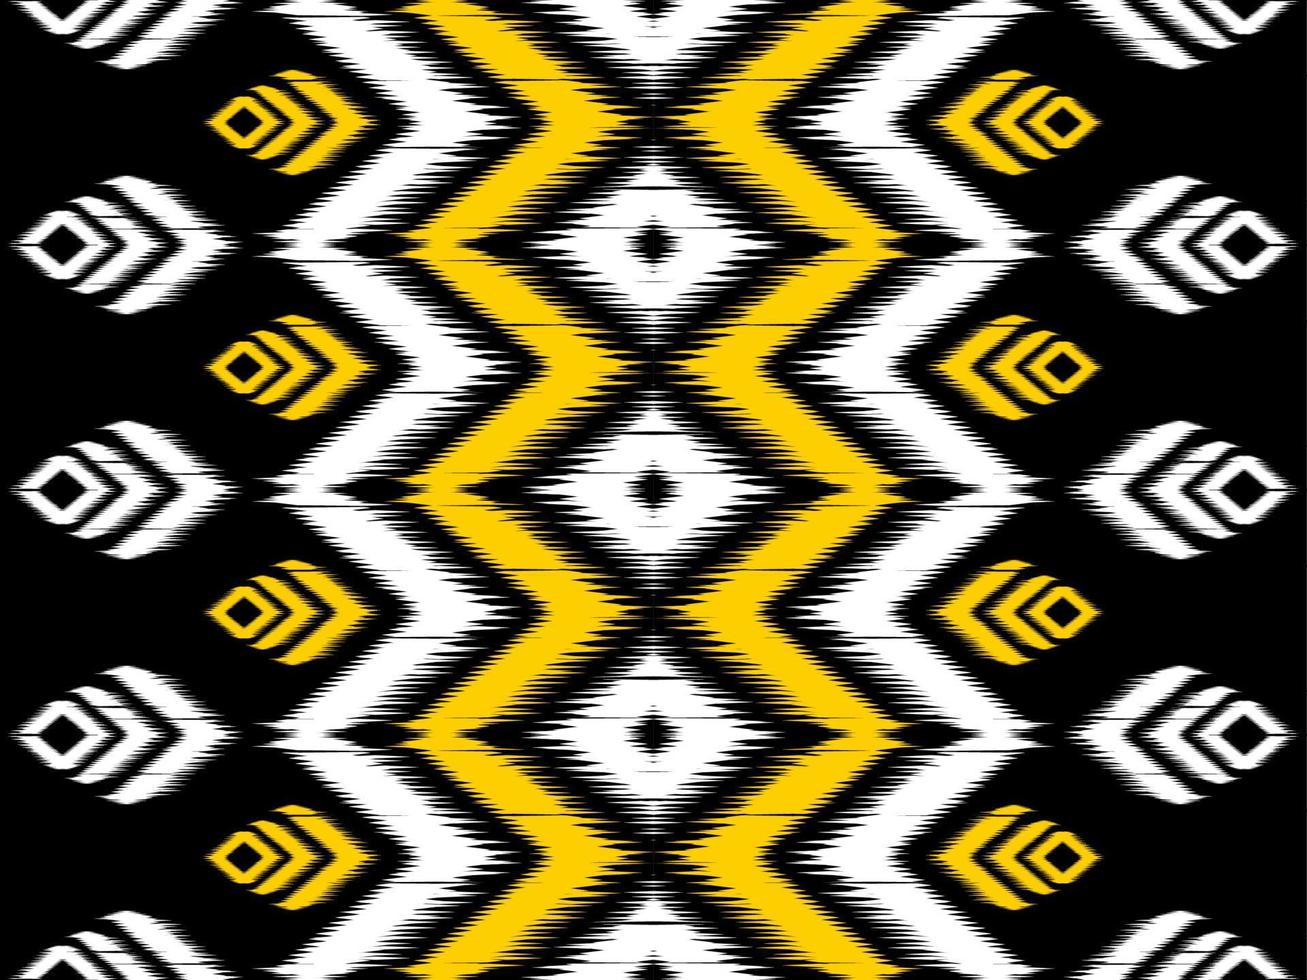 patrón sin costuras ikat en tribal. geométrico étnico tradicional. estilo mexicano a rayas. diseño para fondo, papel tapiz, ilustración vectorial, tela, ropa, batik, alfombra, bordado. vector